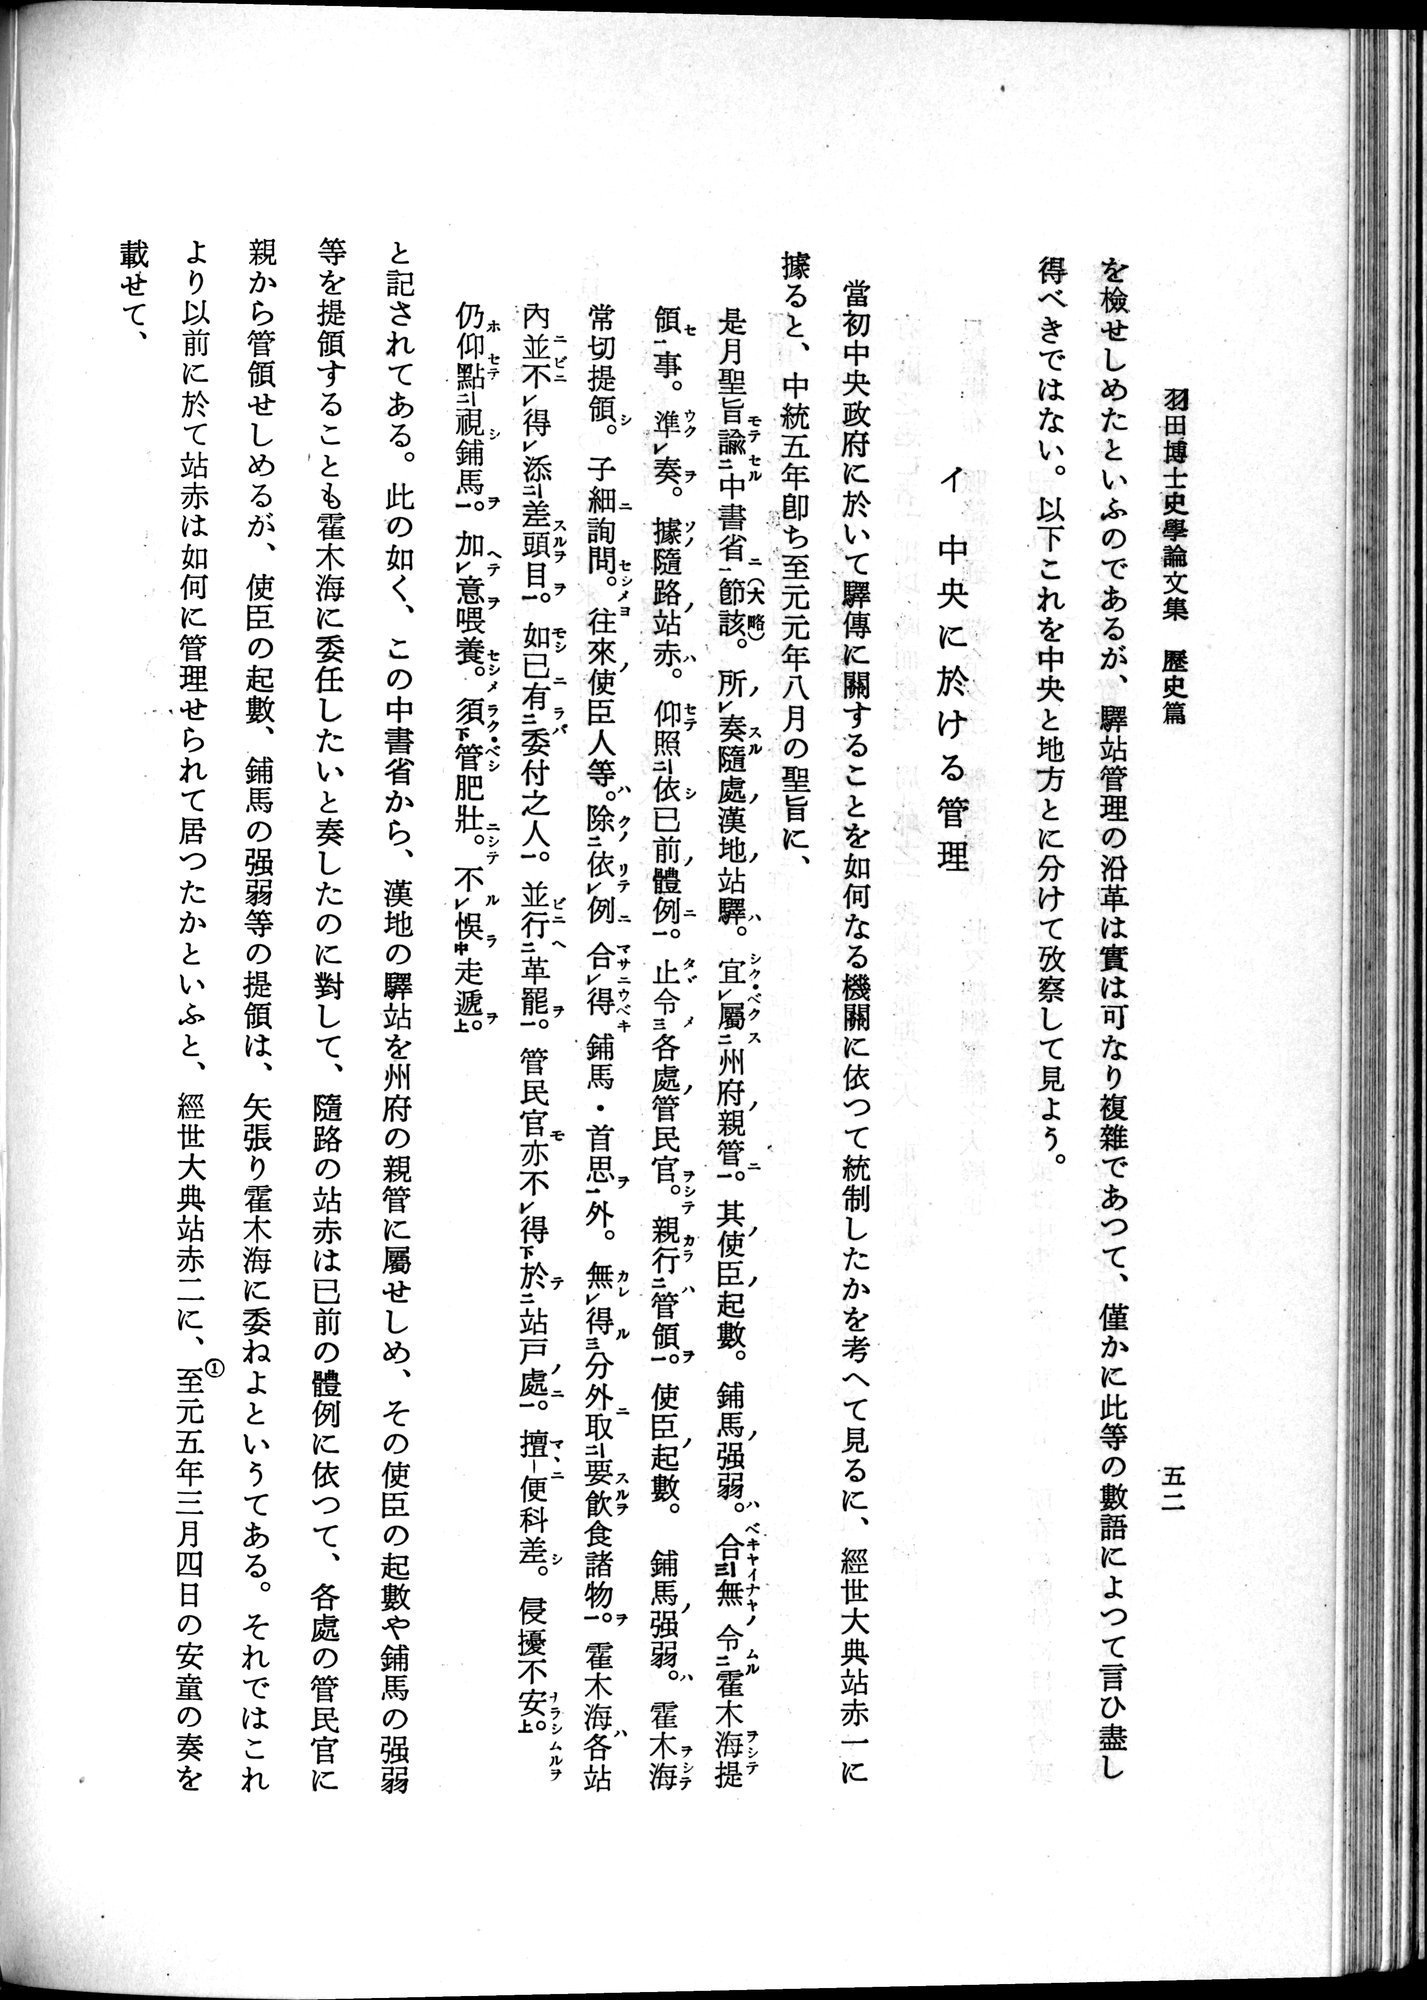 羽田博士史学論文集 : vol.1 / Page 90 (Grayscale High Resolution Image)